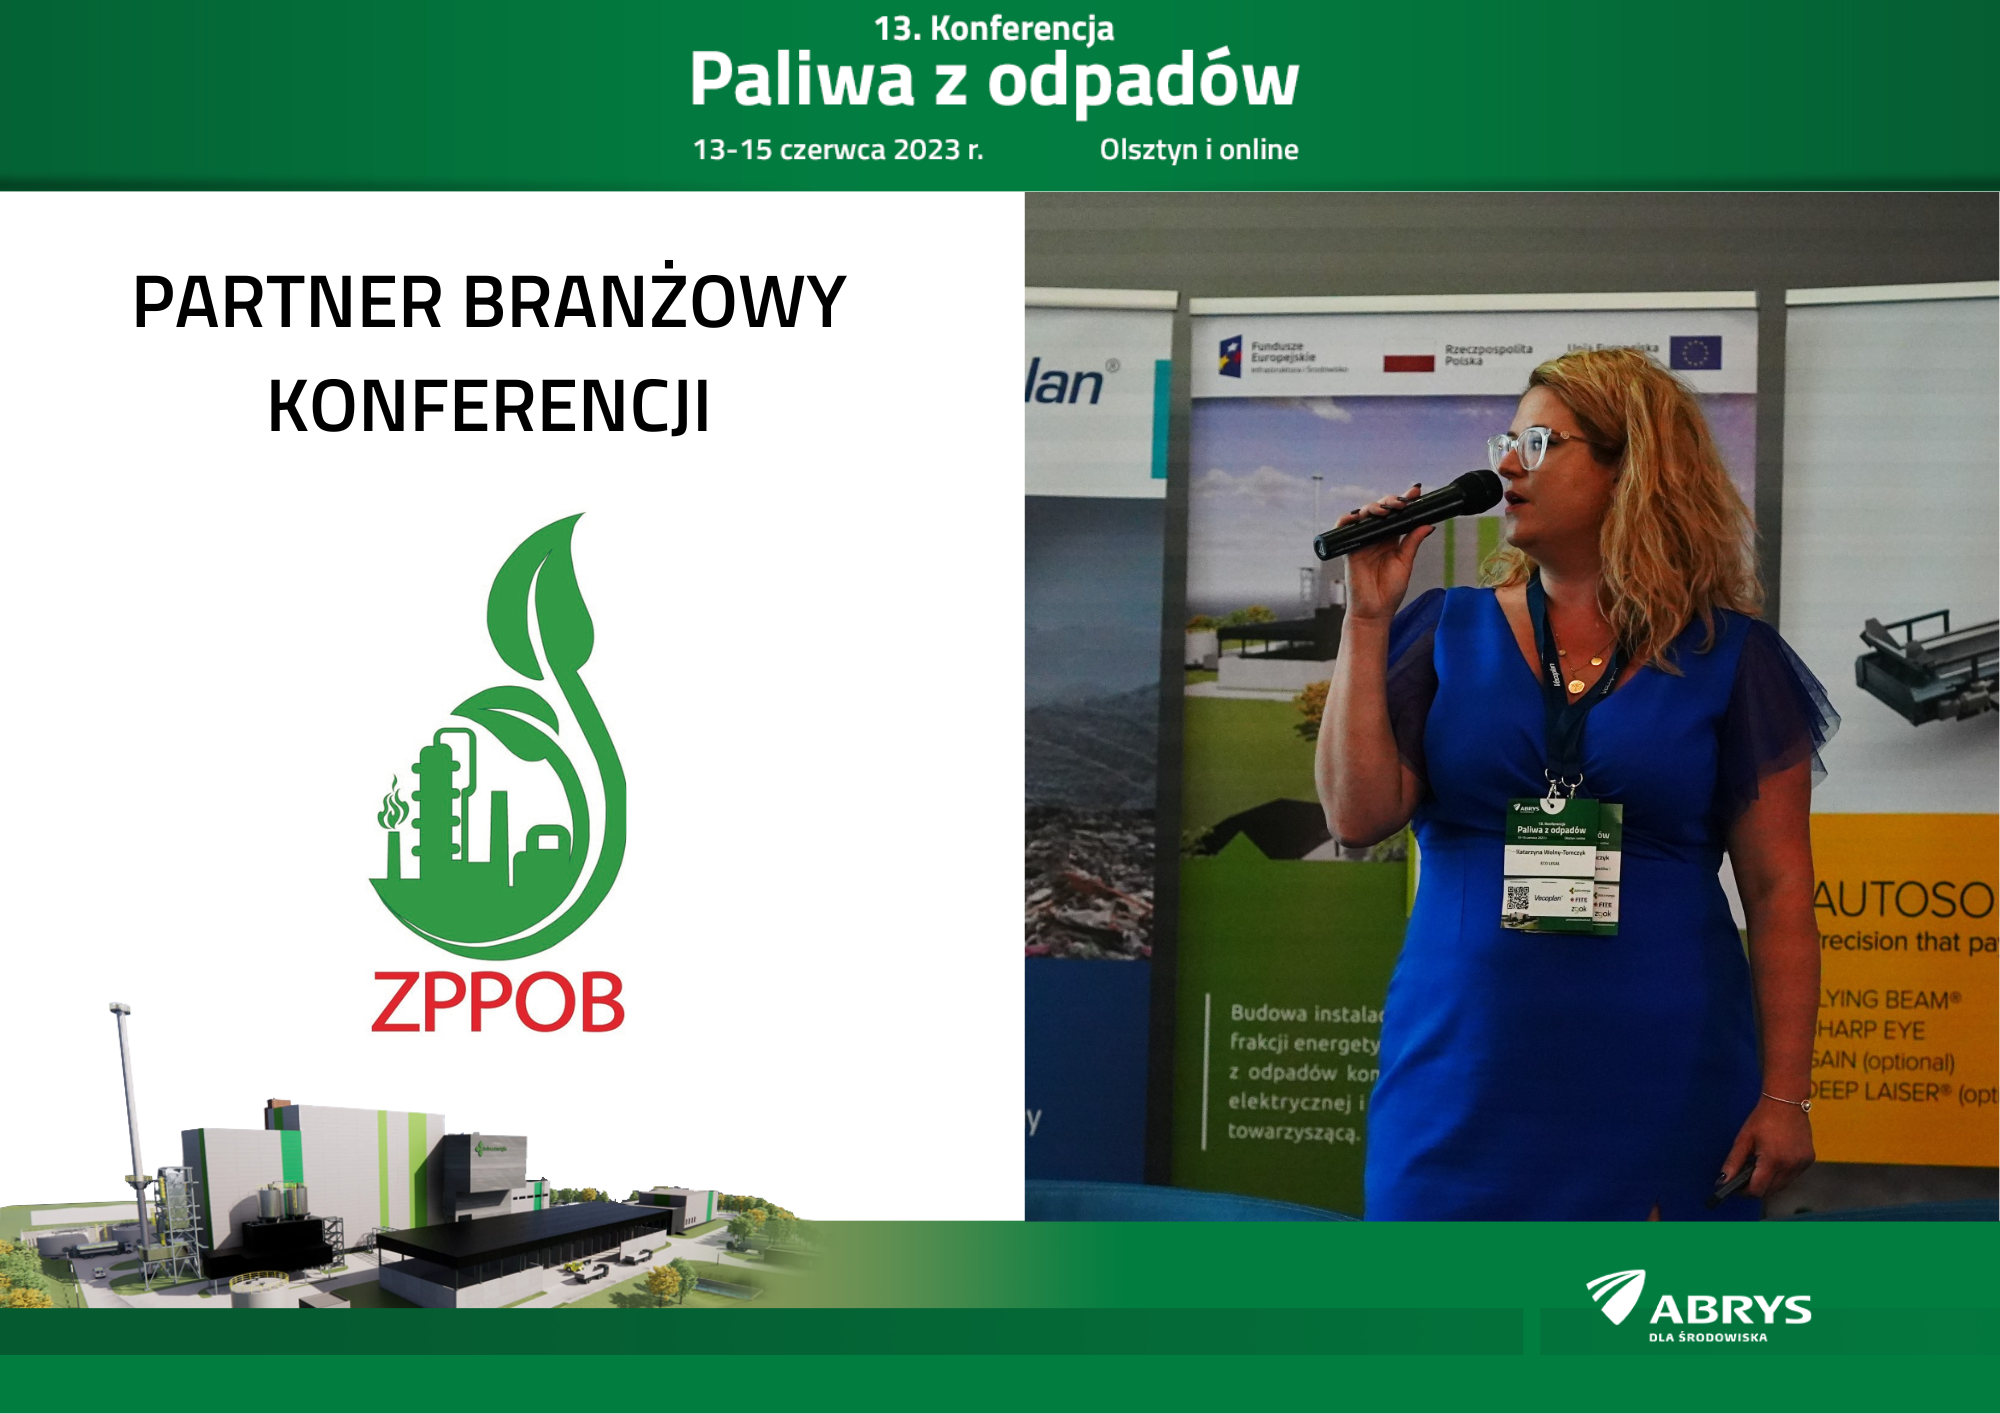 13. Konferencja Paliwa z Odpadów, 13-15 czerwca 2023 r., Olsztyn